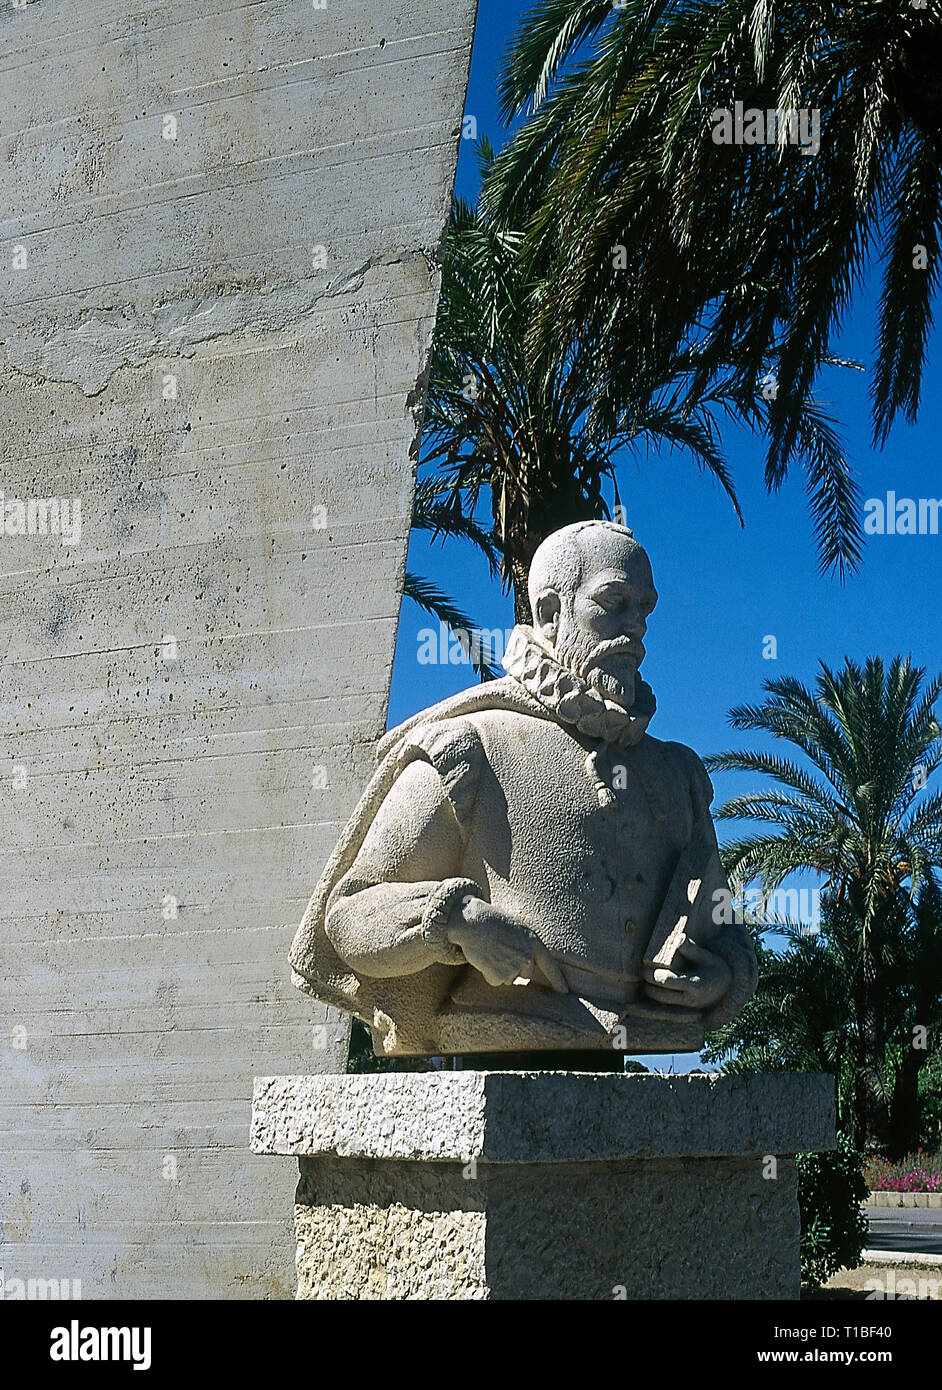 Miguel de Cervantes (1547-1616). L'écrivain espagnol. Auteur de Don Quichotte. Monument à Cervantes en hommage à son atterrissage à Denia après sa captivité à Alger, 1580. Denia, province d'Alicante, Communauté de Valence, Espagne. Banque D'Images